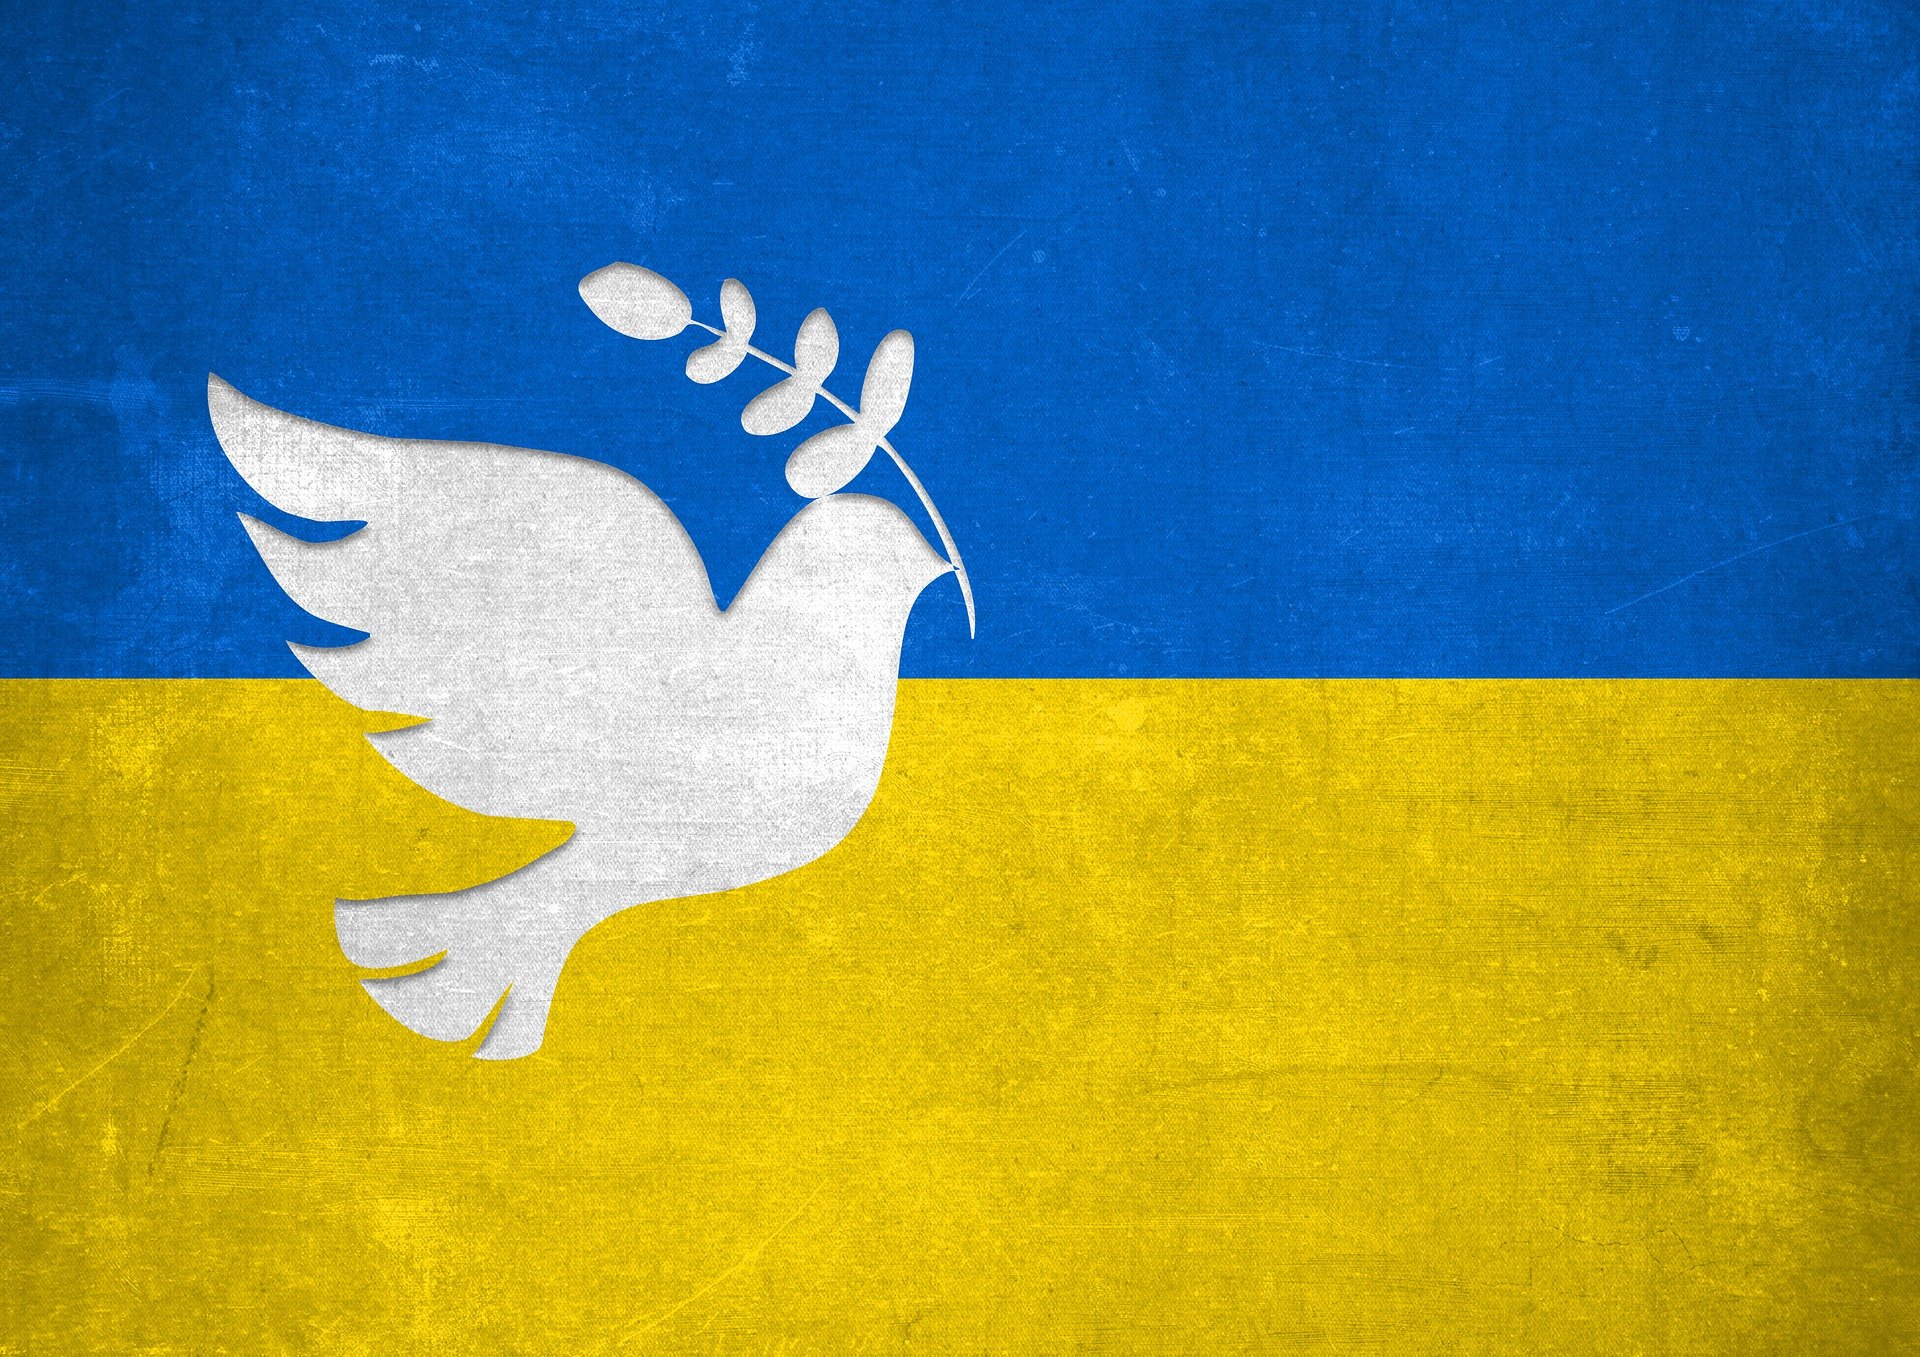 Ukrainische Flagge mit Friedenstaube